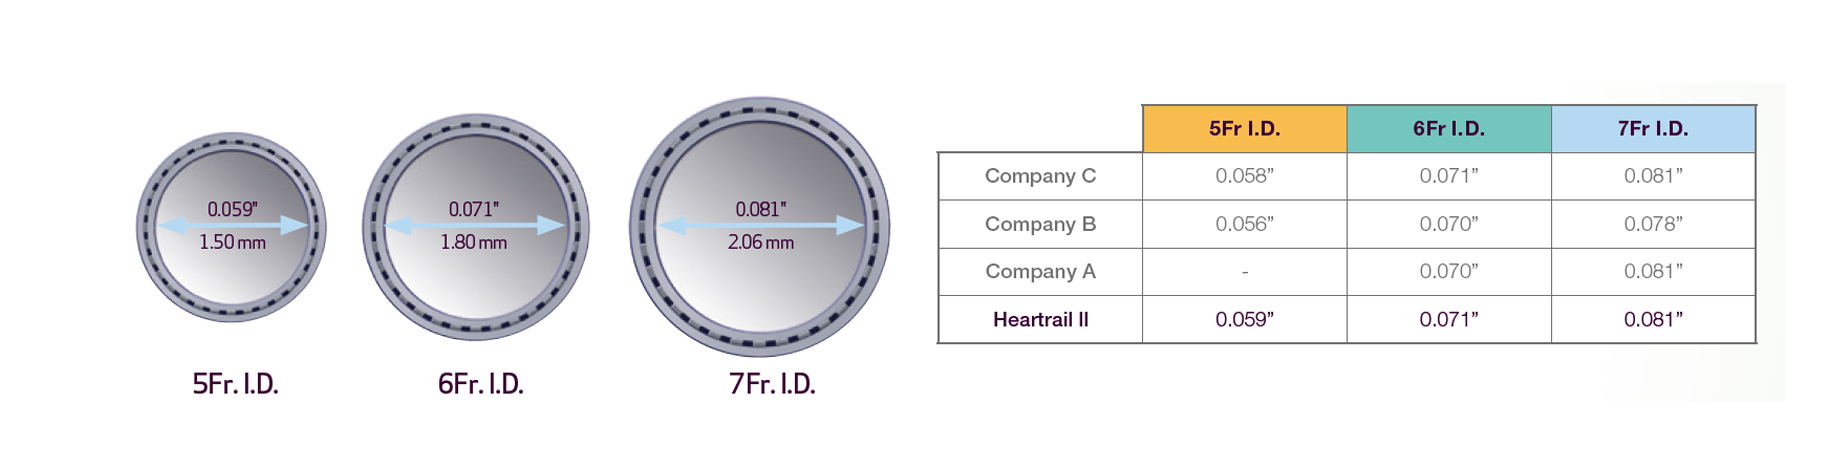 Heartrail II inner lumen size (image)